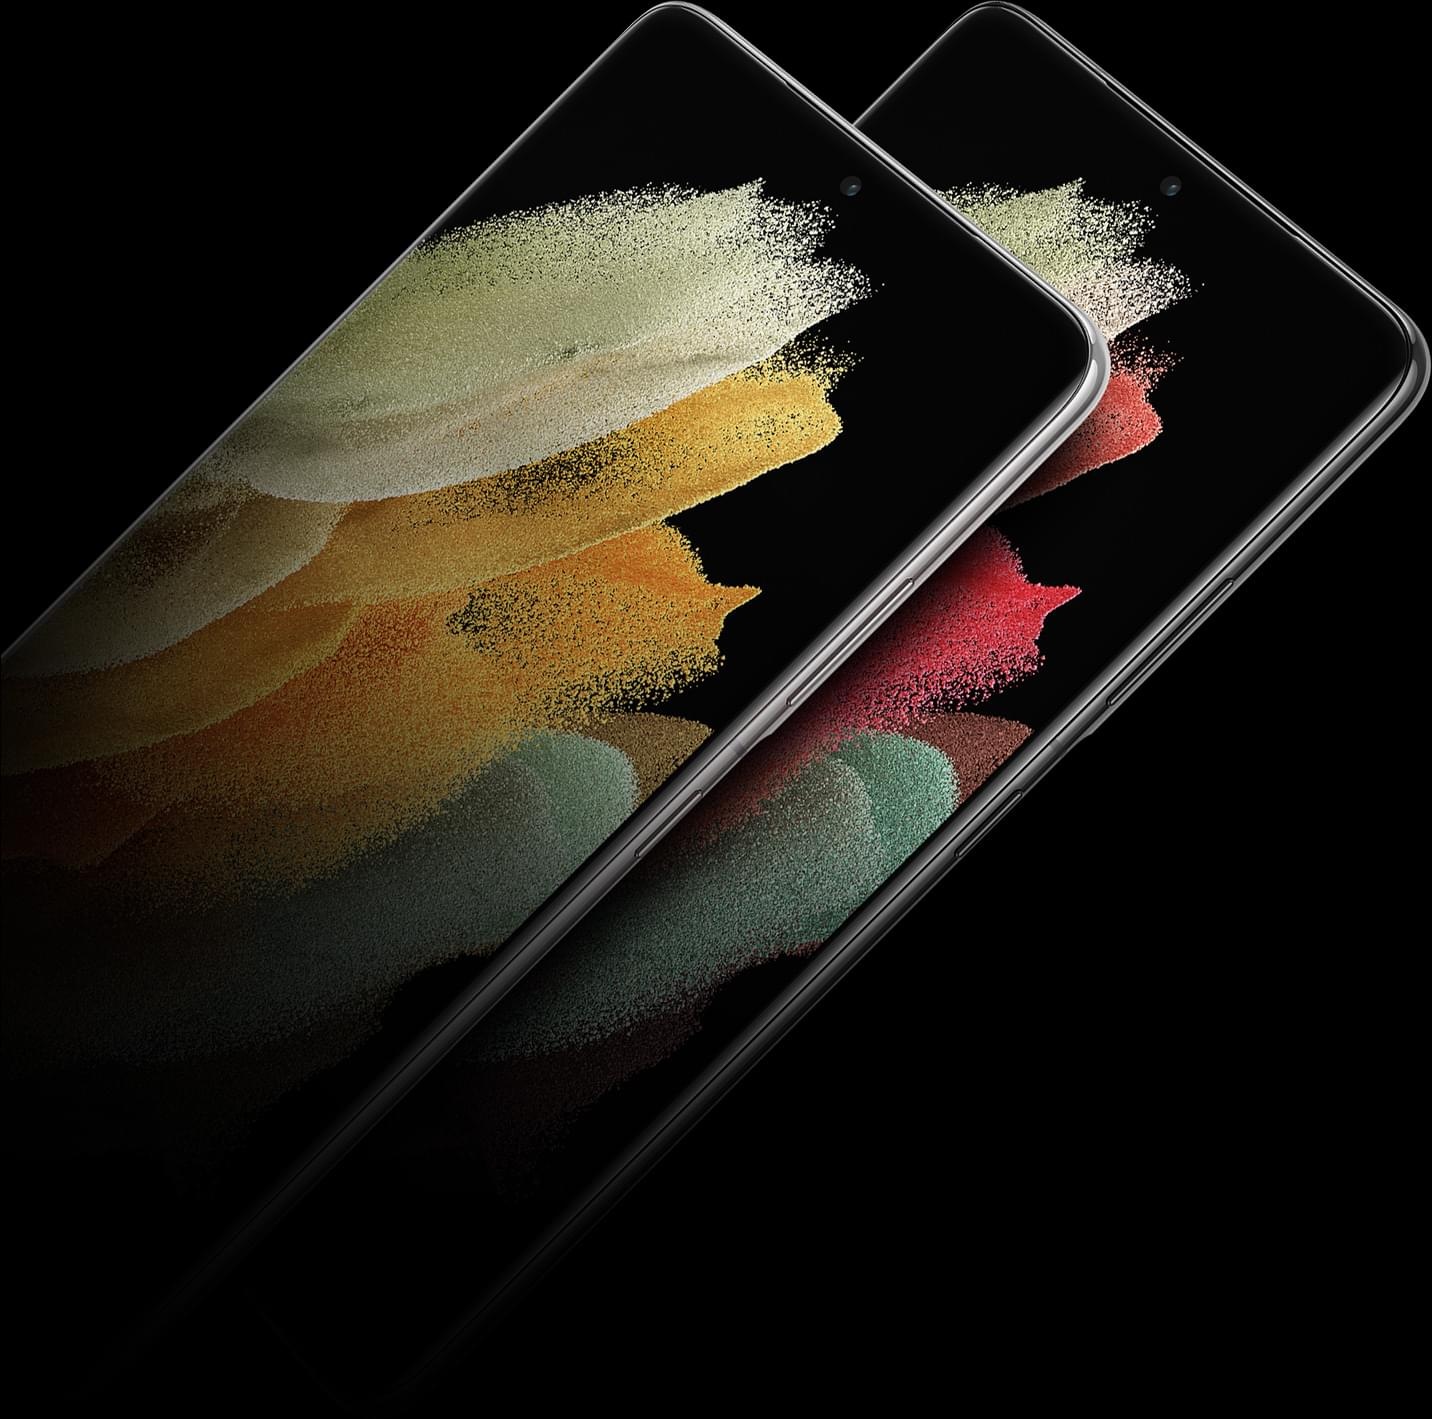 دو گوشی Galaxy S21 Ultra 5G روی هم قرار گرفته اند که از جلو با تصویر زمینه گرافیکی روی صفحه دیده می شوند.